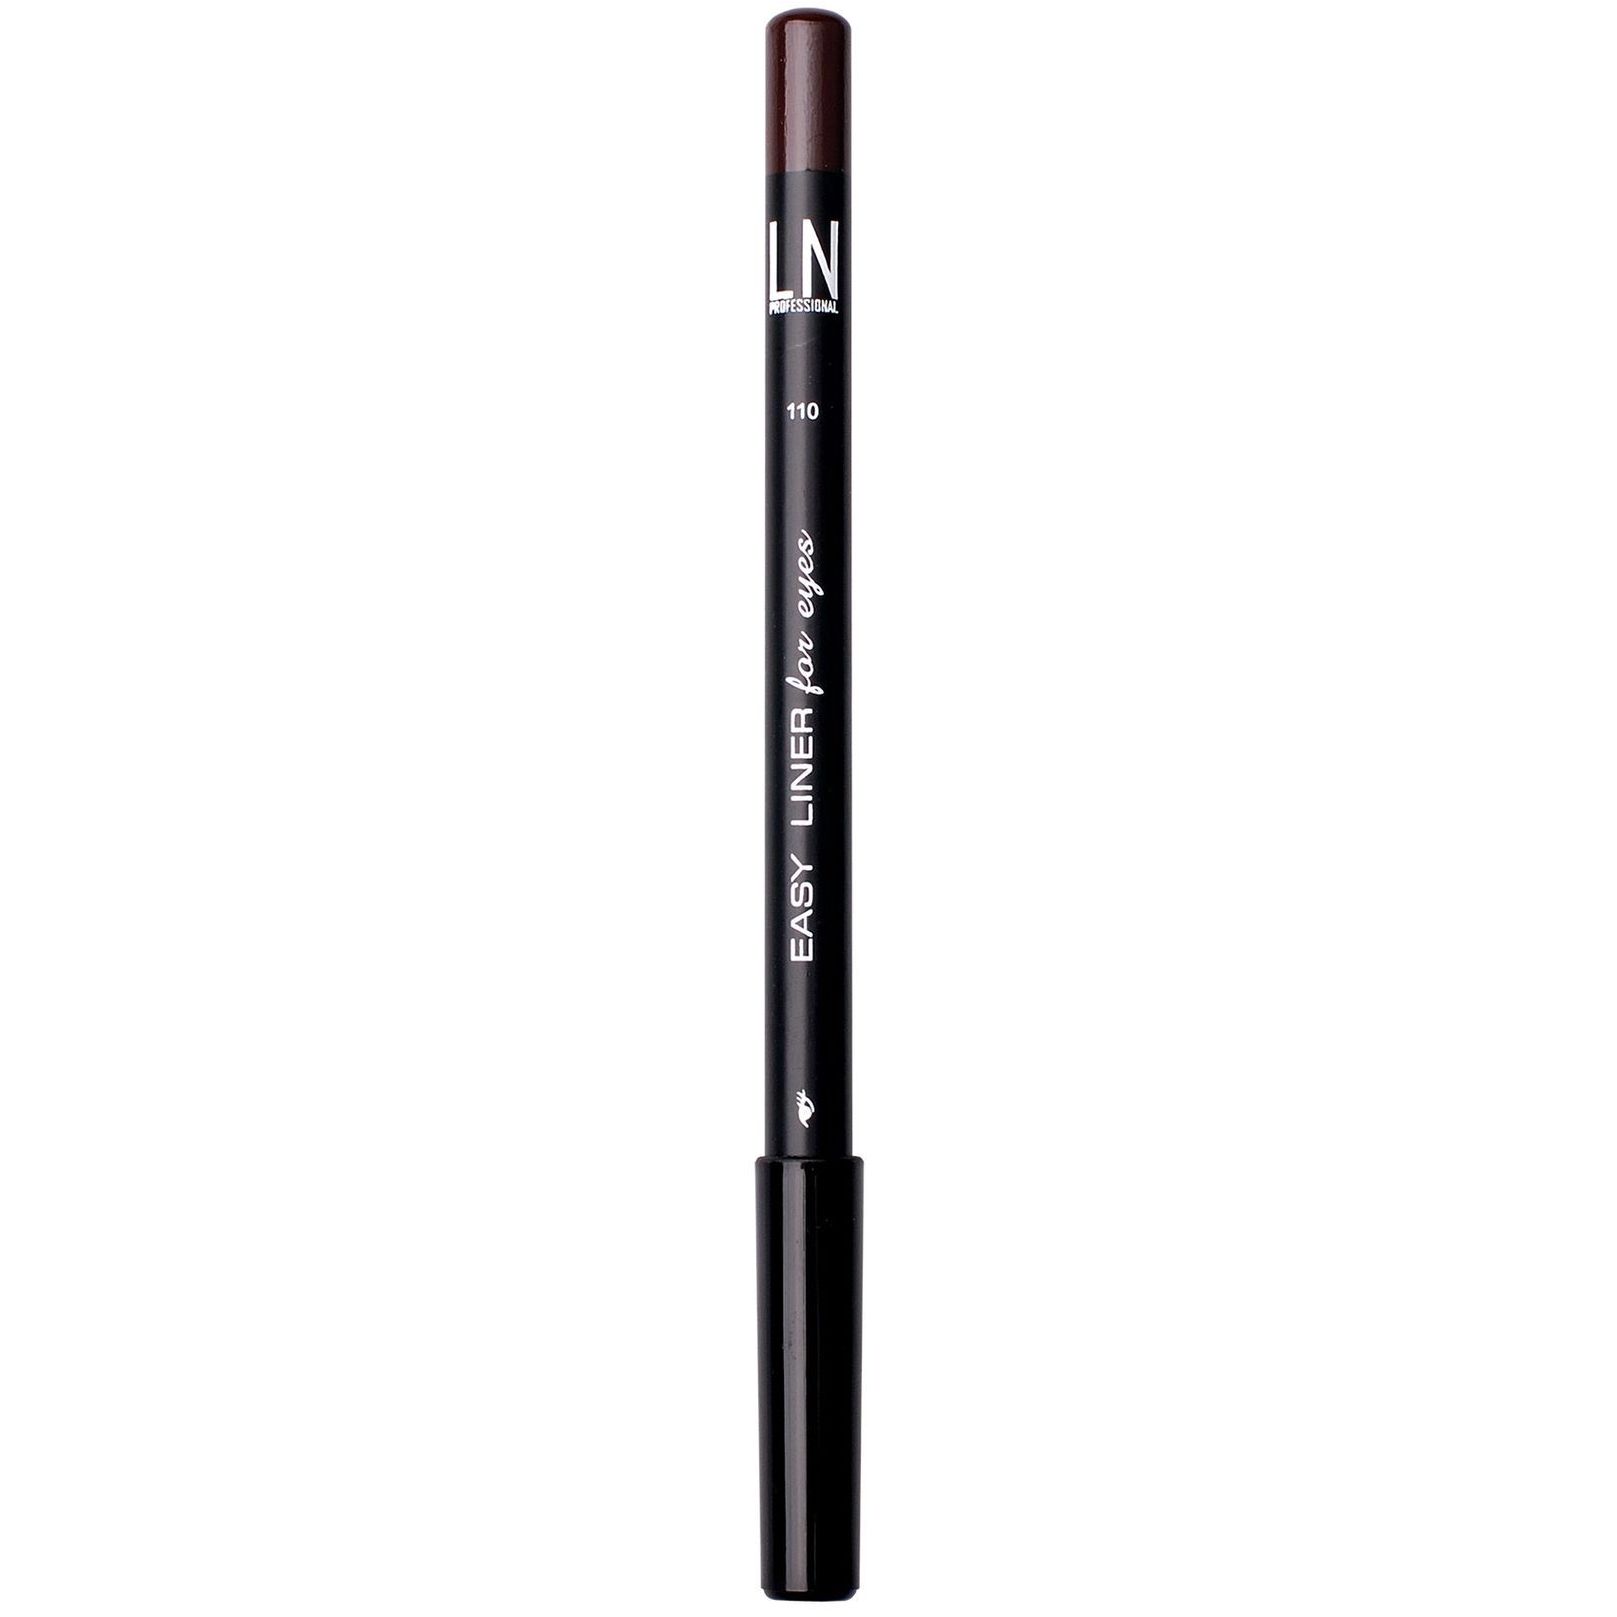 Олівець для очей LN Professional Easy Liner Eye Pencil відтінок 110 (Chocolate Fondue) 1.7 г - фото 1